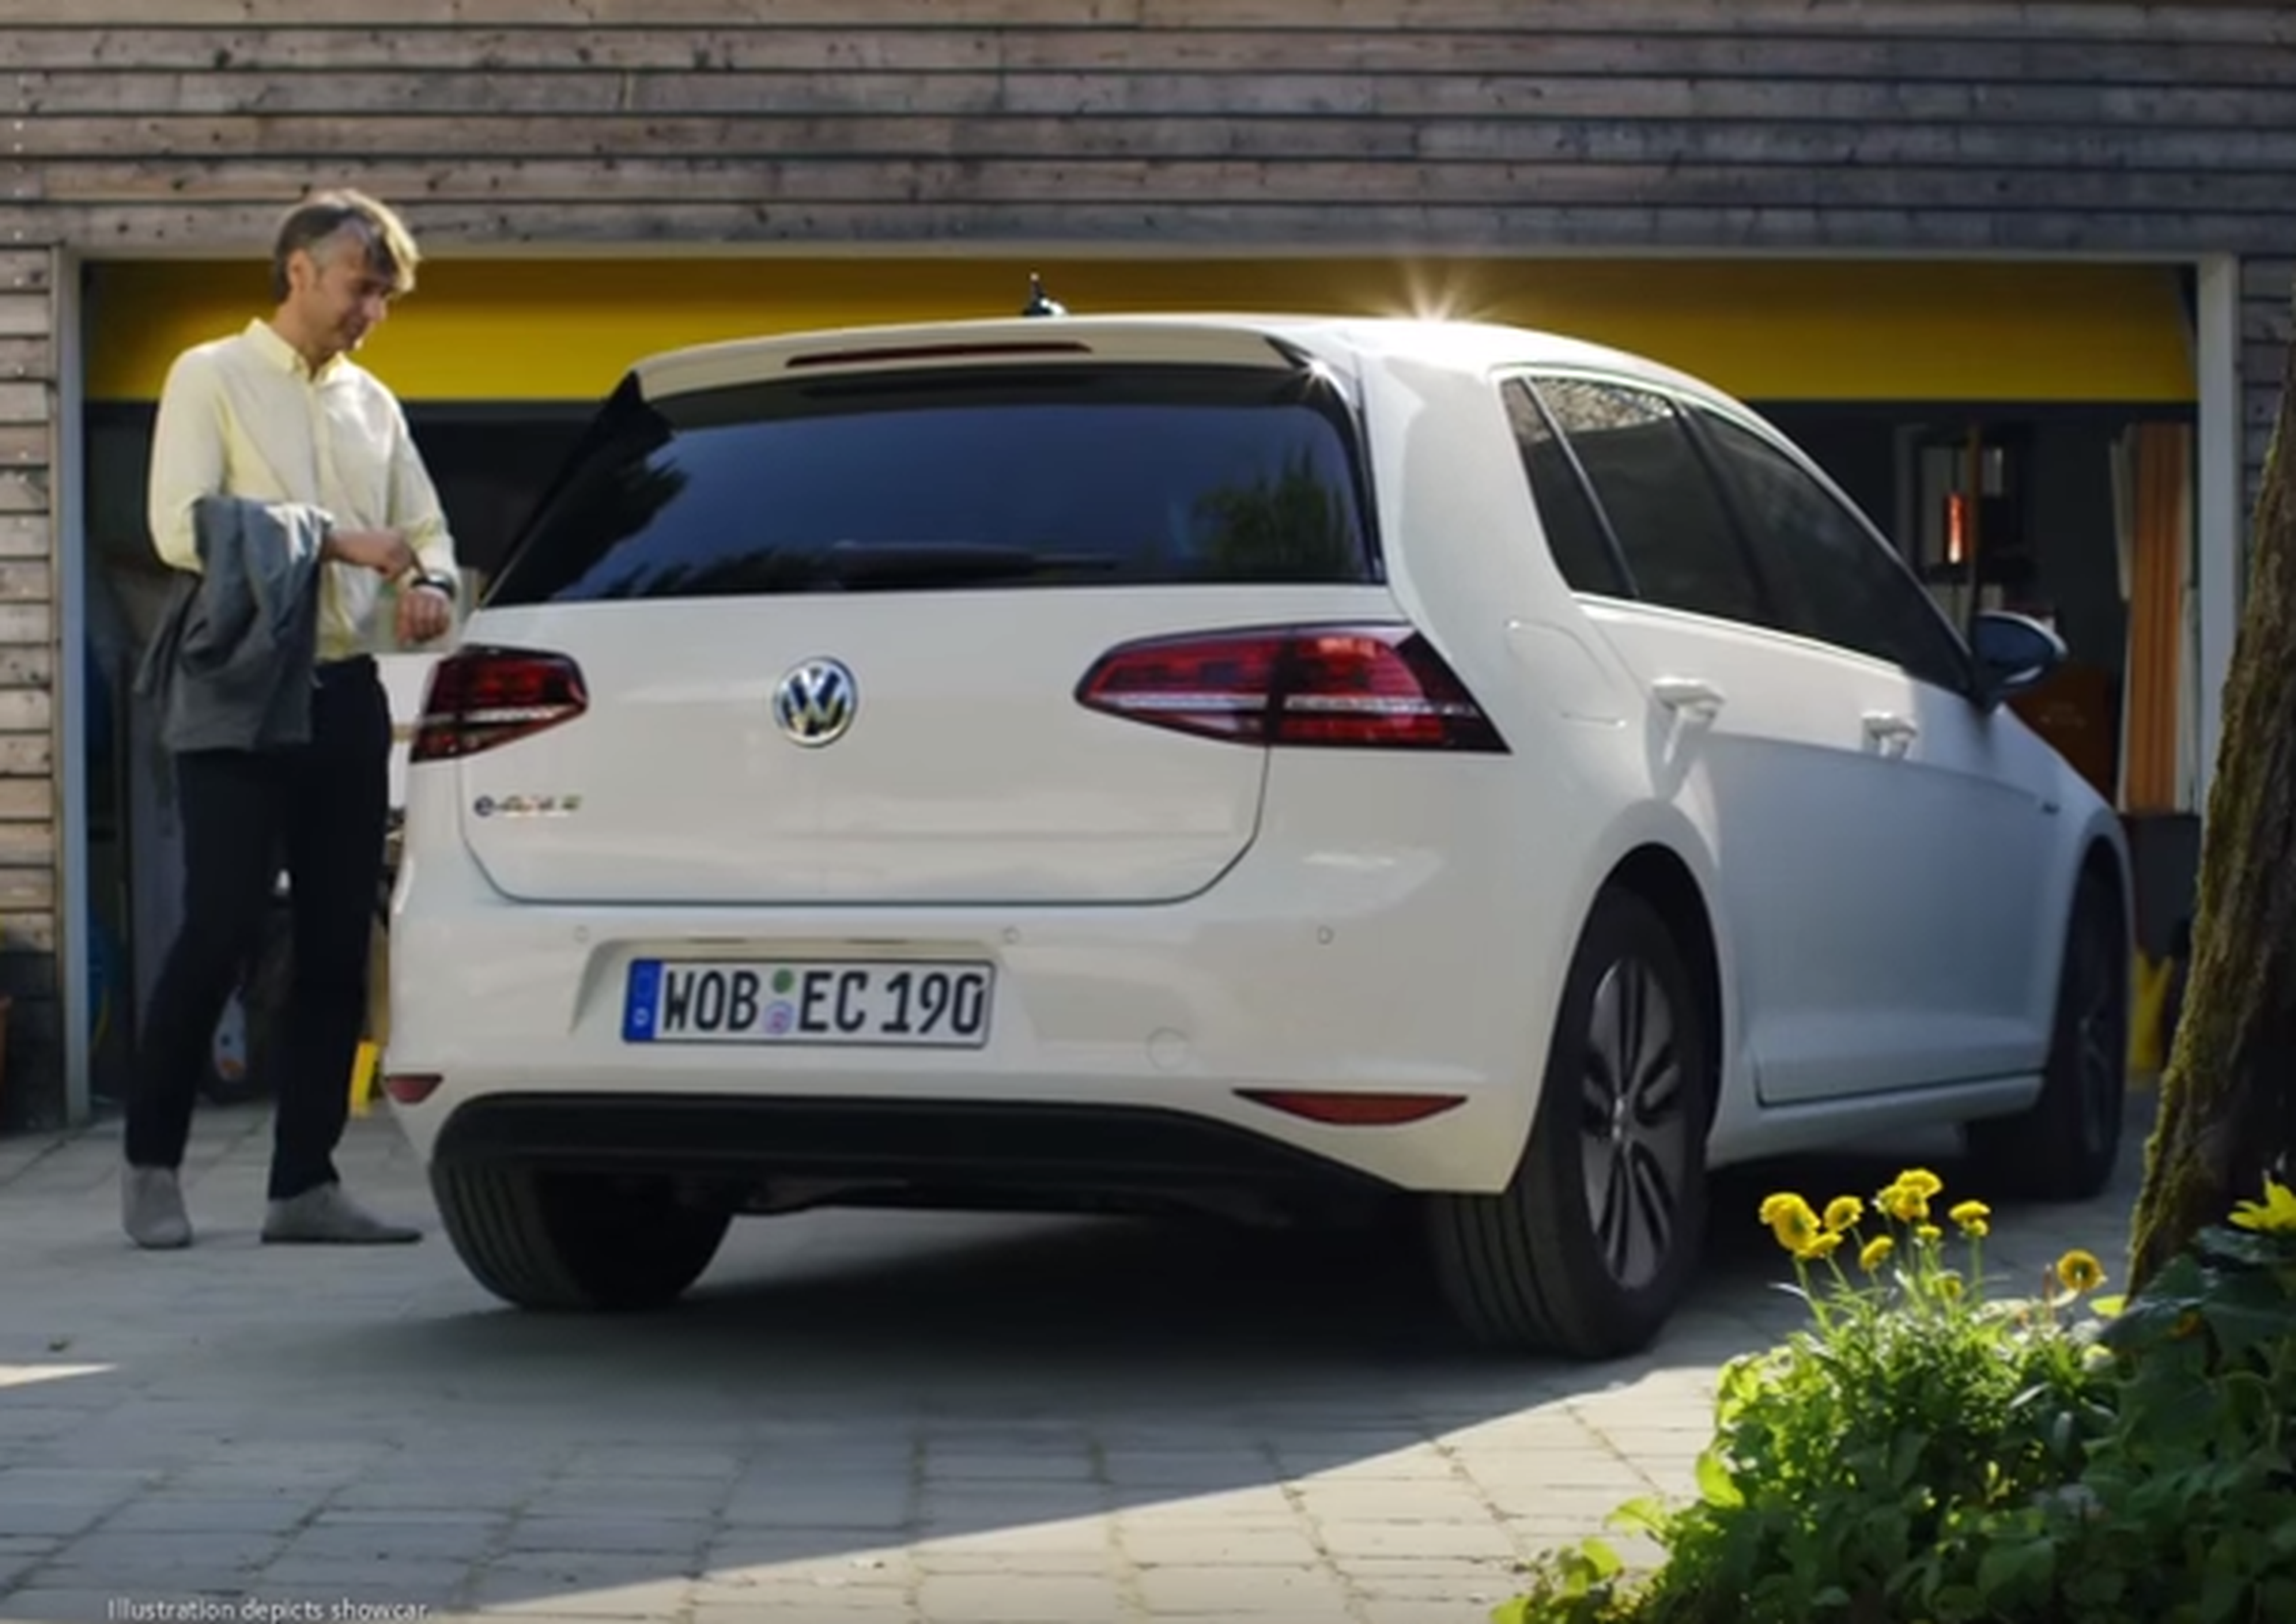 Volkswagen Technology Remote Parking